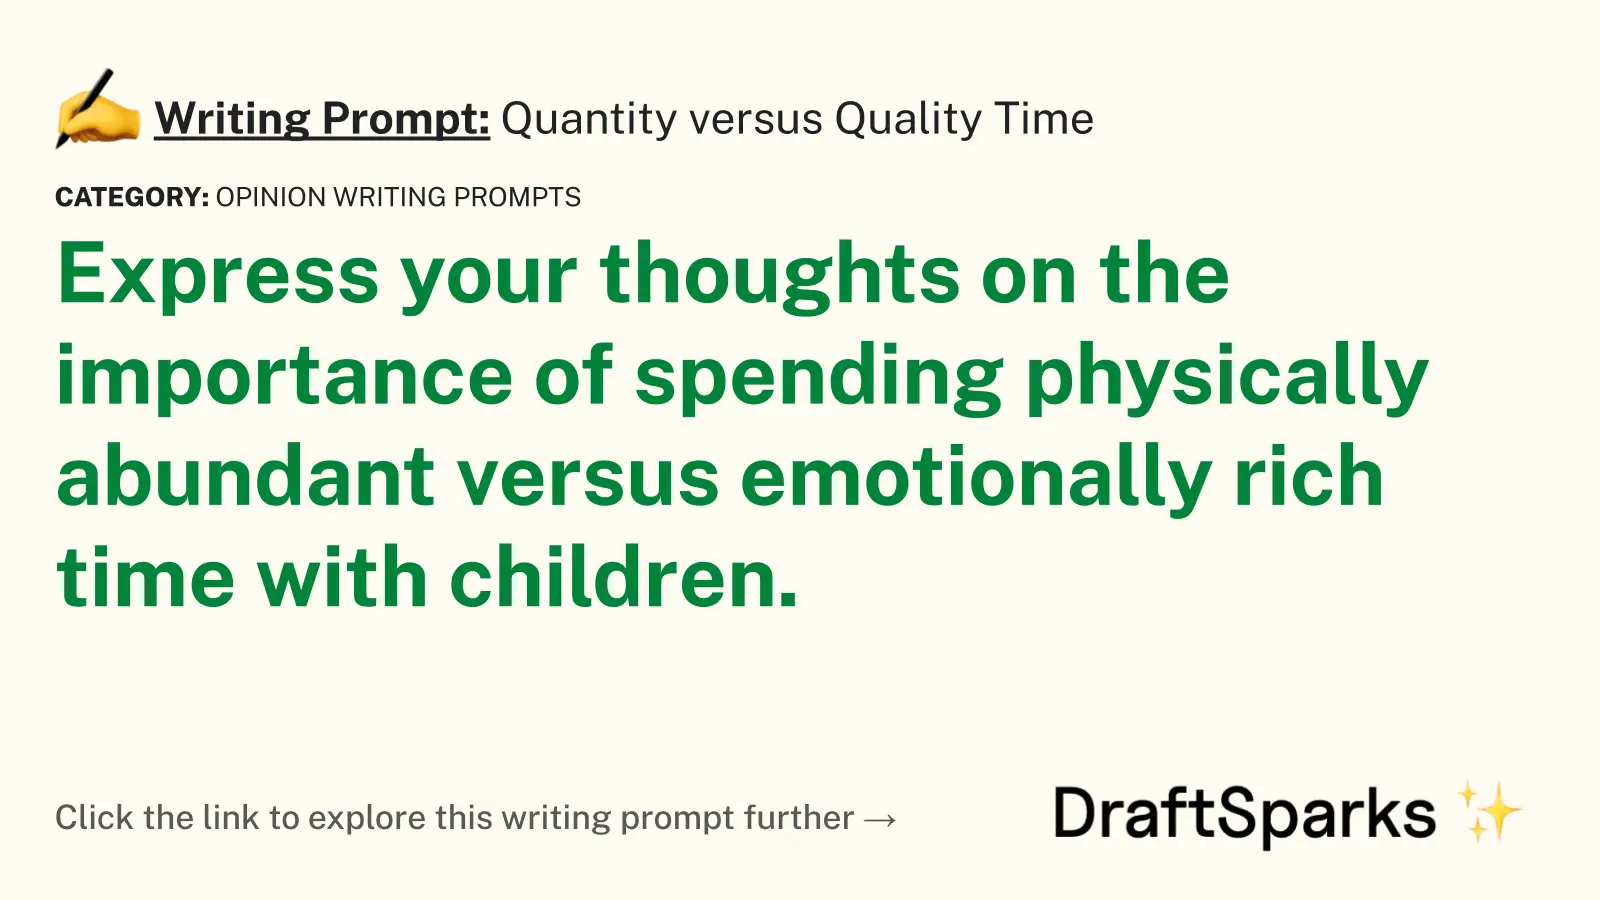 Quantity versus Quality Time